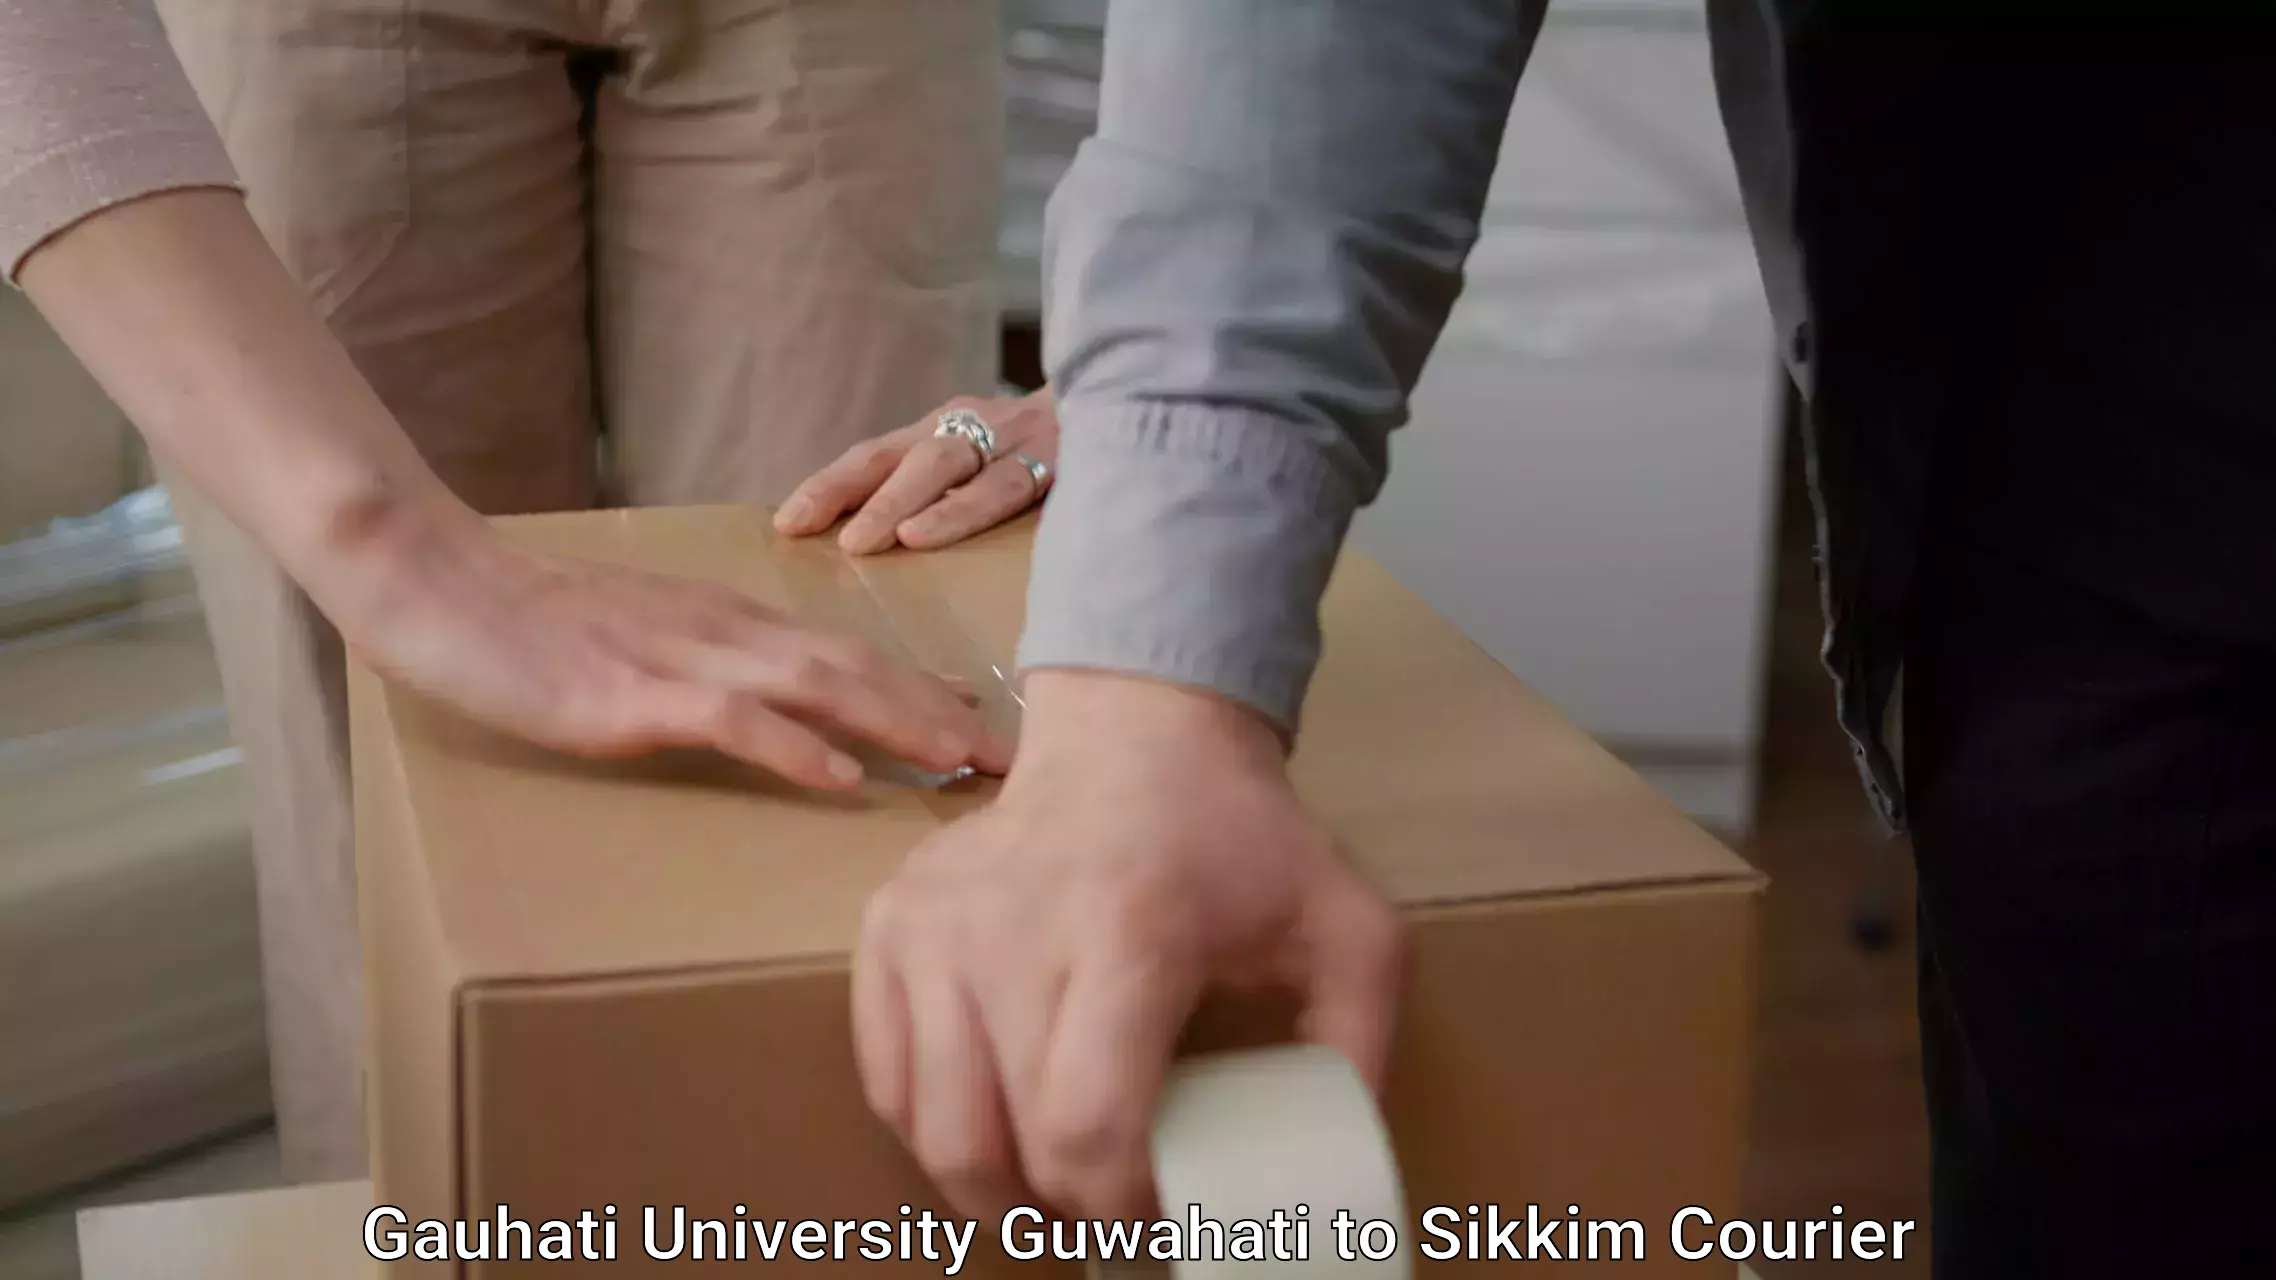 Furniture moving service Gauhati University Guwahati to Mangan